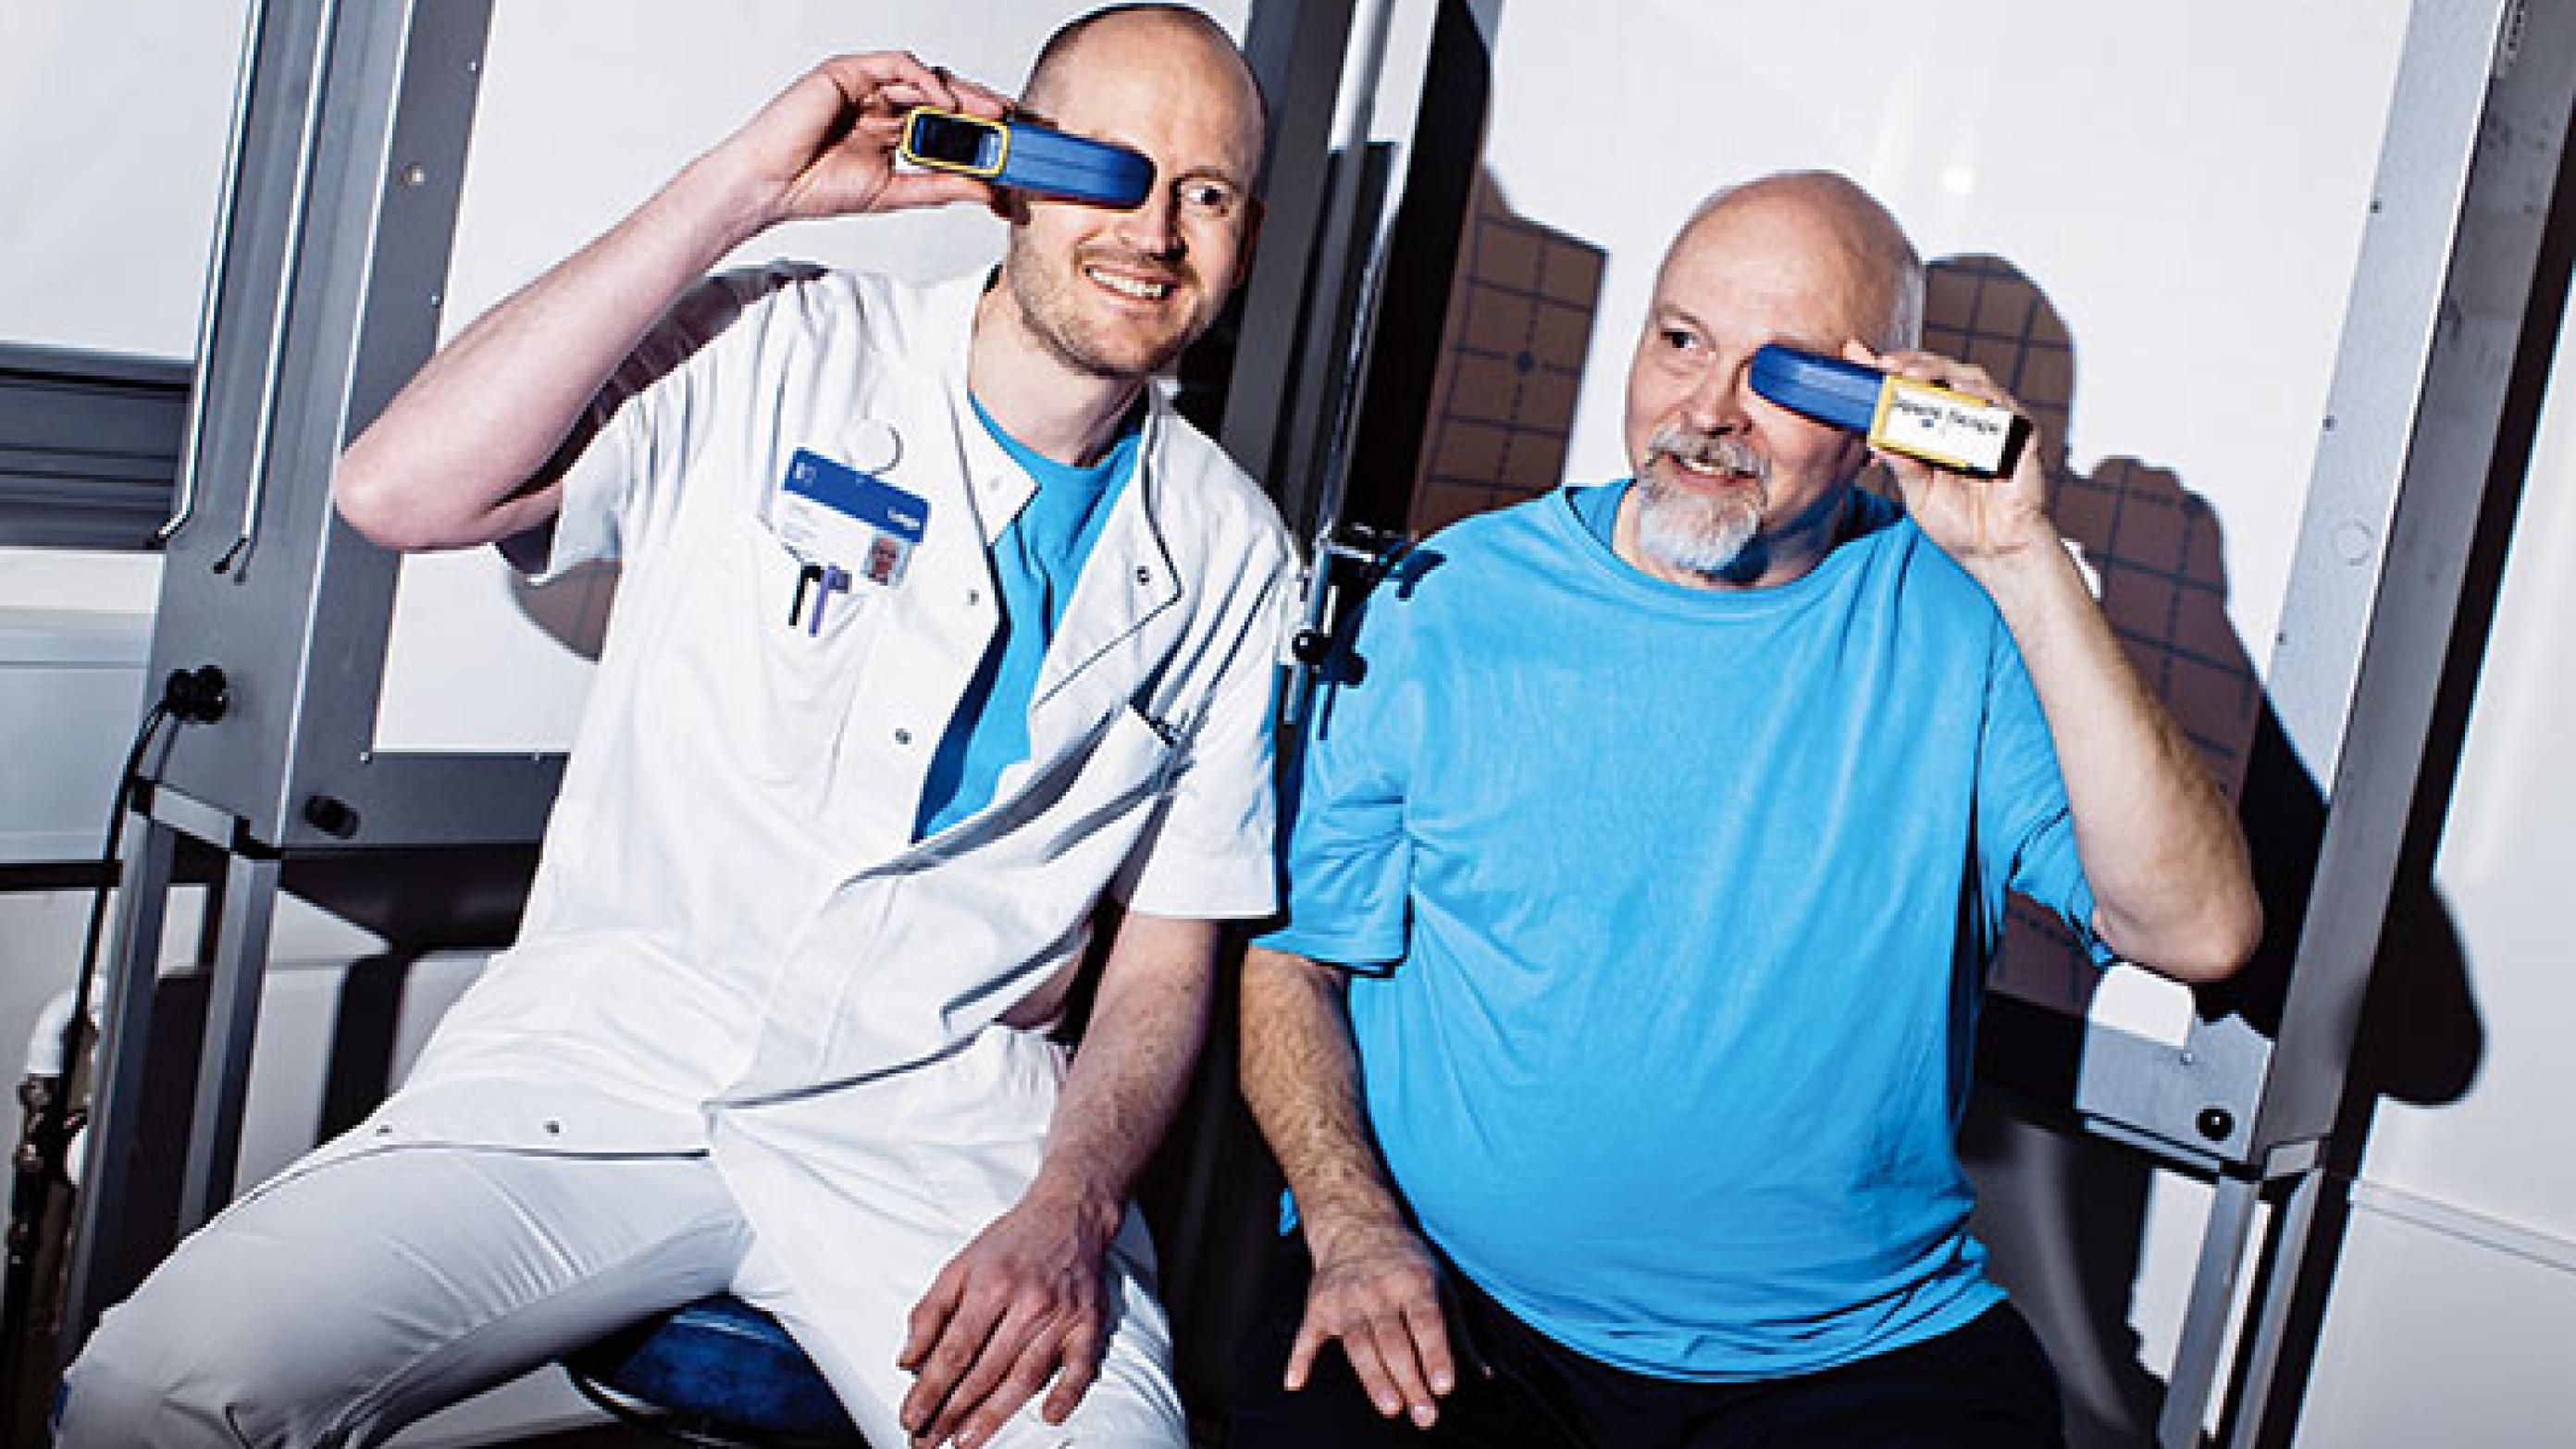 Øjenlæge Jon Peiter Saunte og optiker Max Bonne fra Glostrup Hospital har udviklet et periskop beregnet til undersøgelse af skeløjede børn. Foto: ©clausboesen.dk